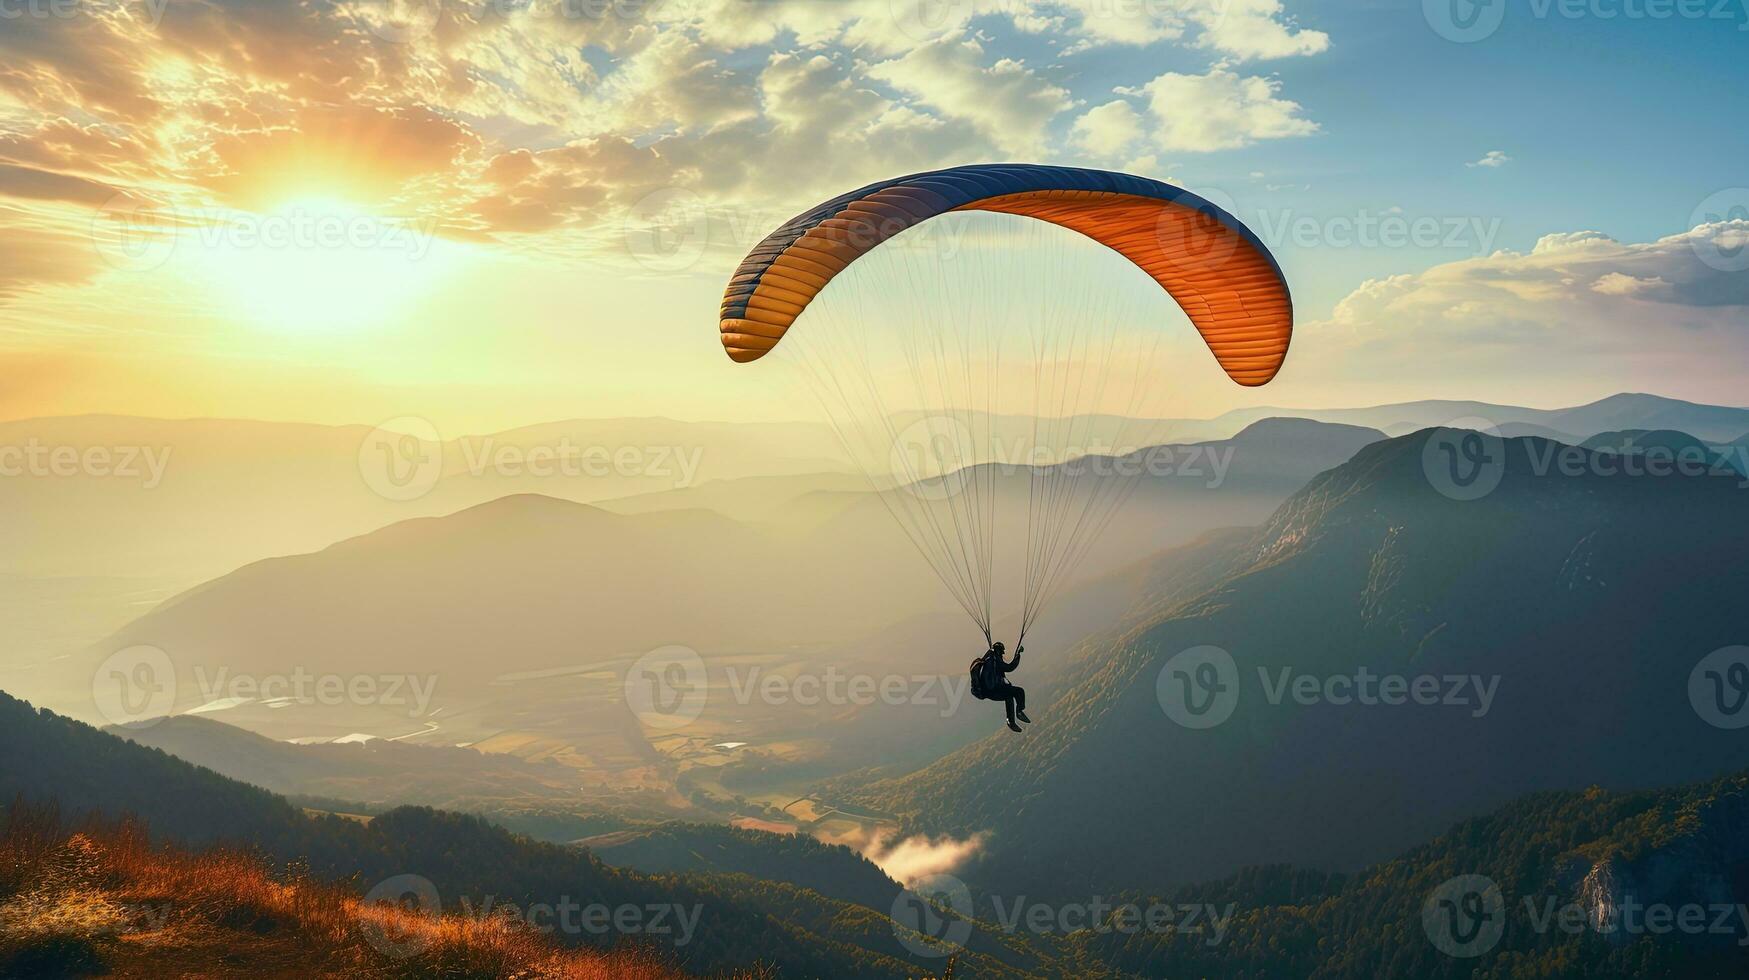 ancien coloré parapente silhouette au dessus brumeux Crimée vallée à lever du soleil photo